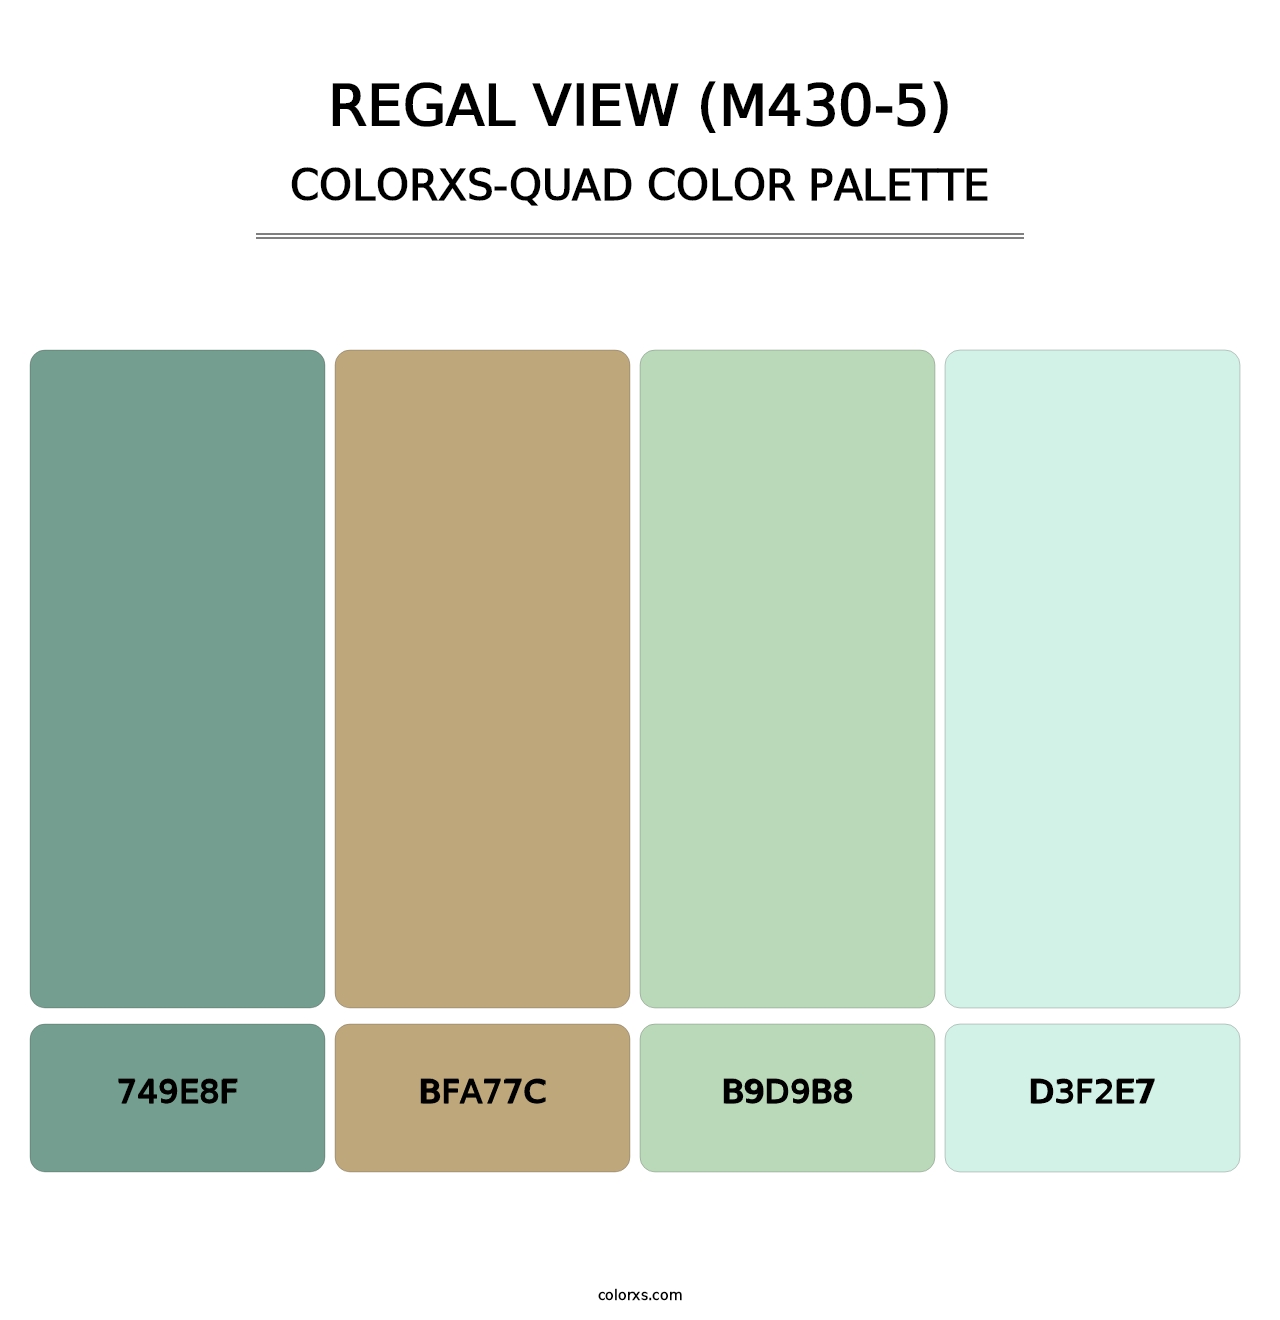 Regal View (M430-5) - Colorxs Quad Palette